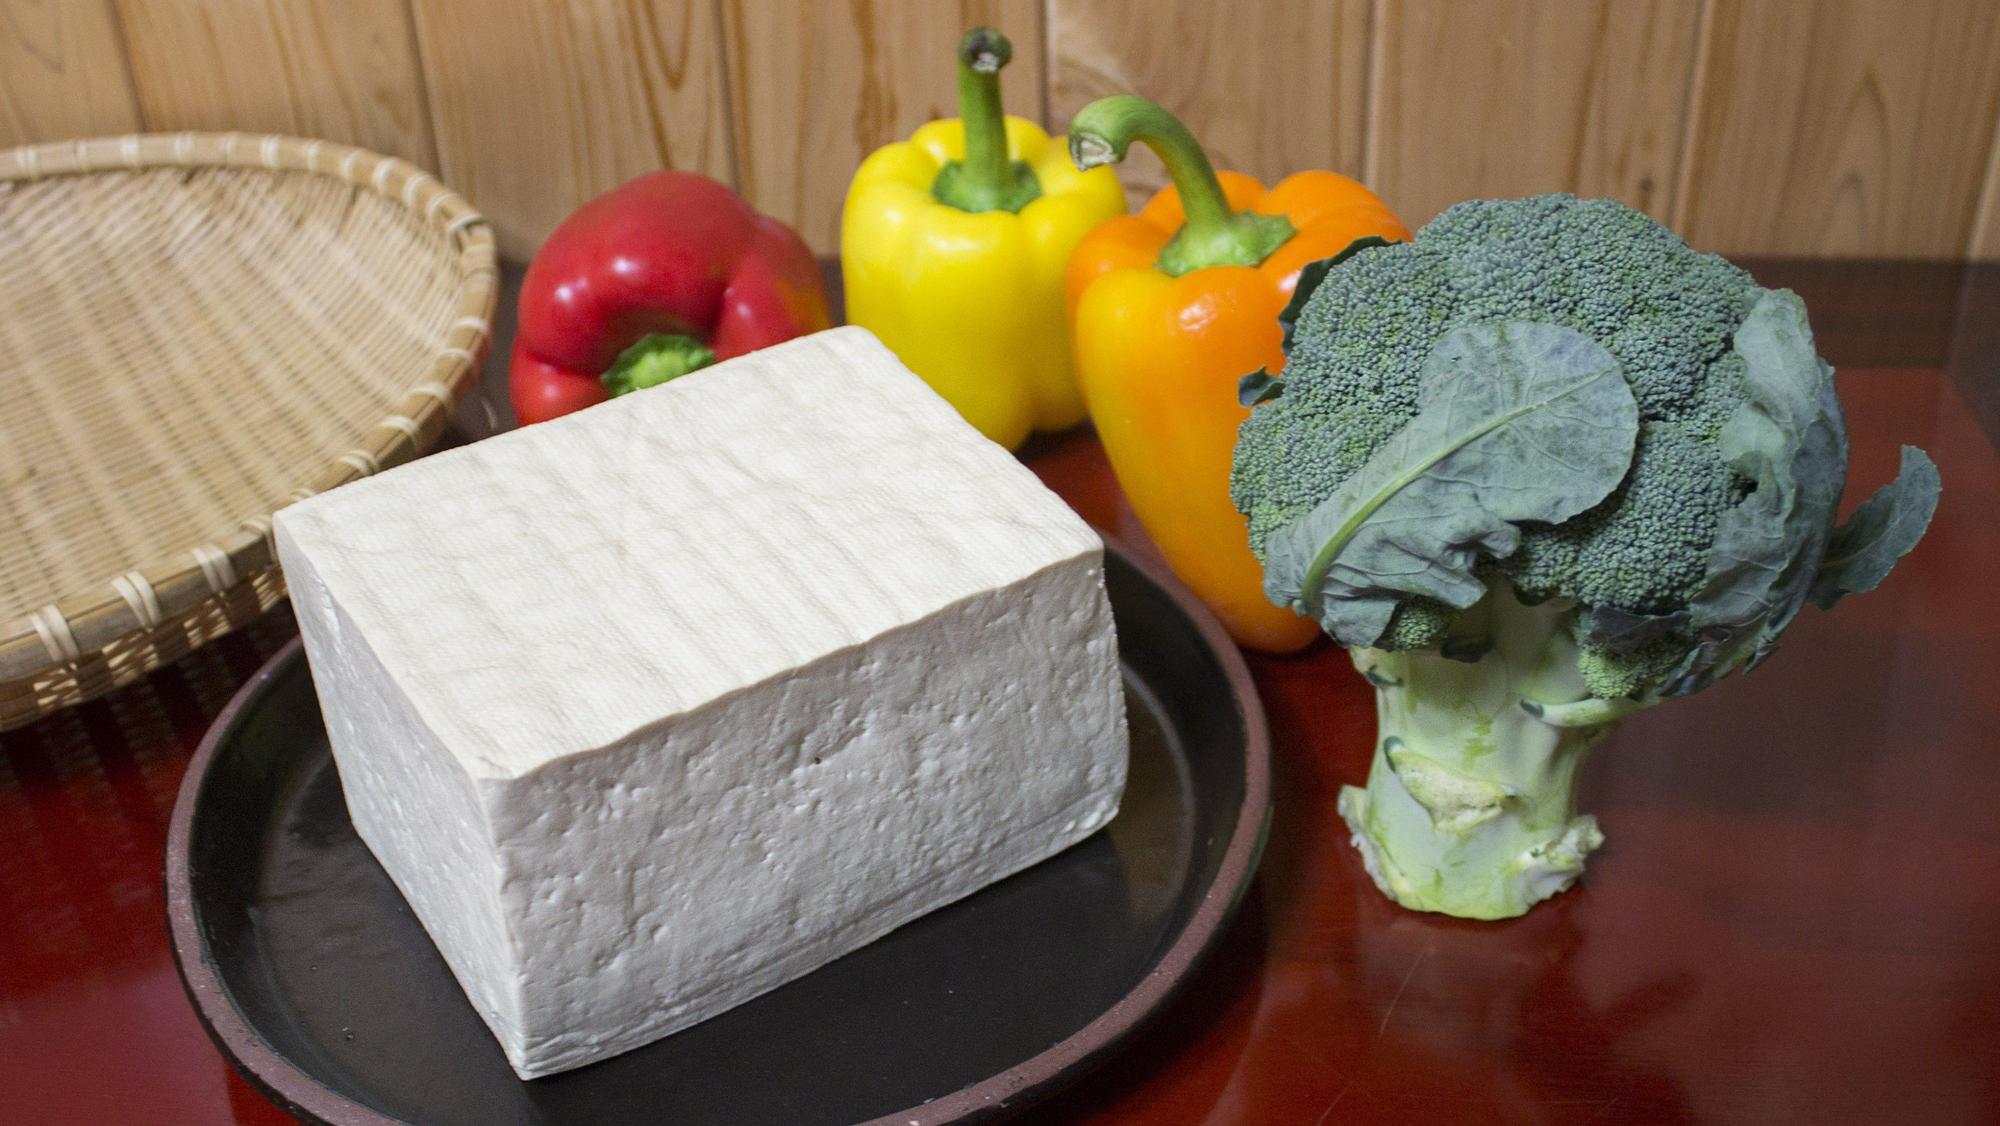 Un bloque de tofu, junto a unos pimientos y un tronco de brócoli